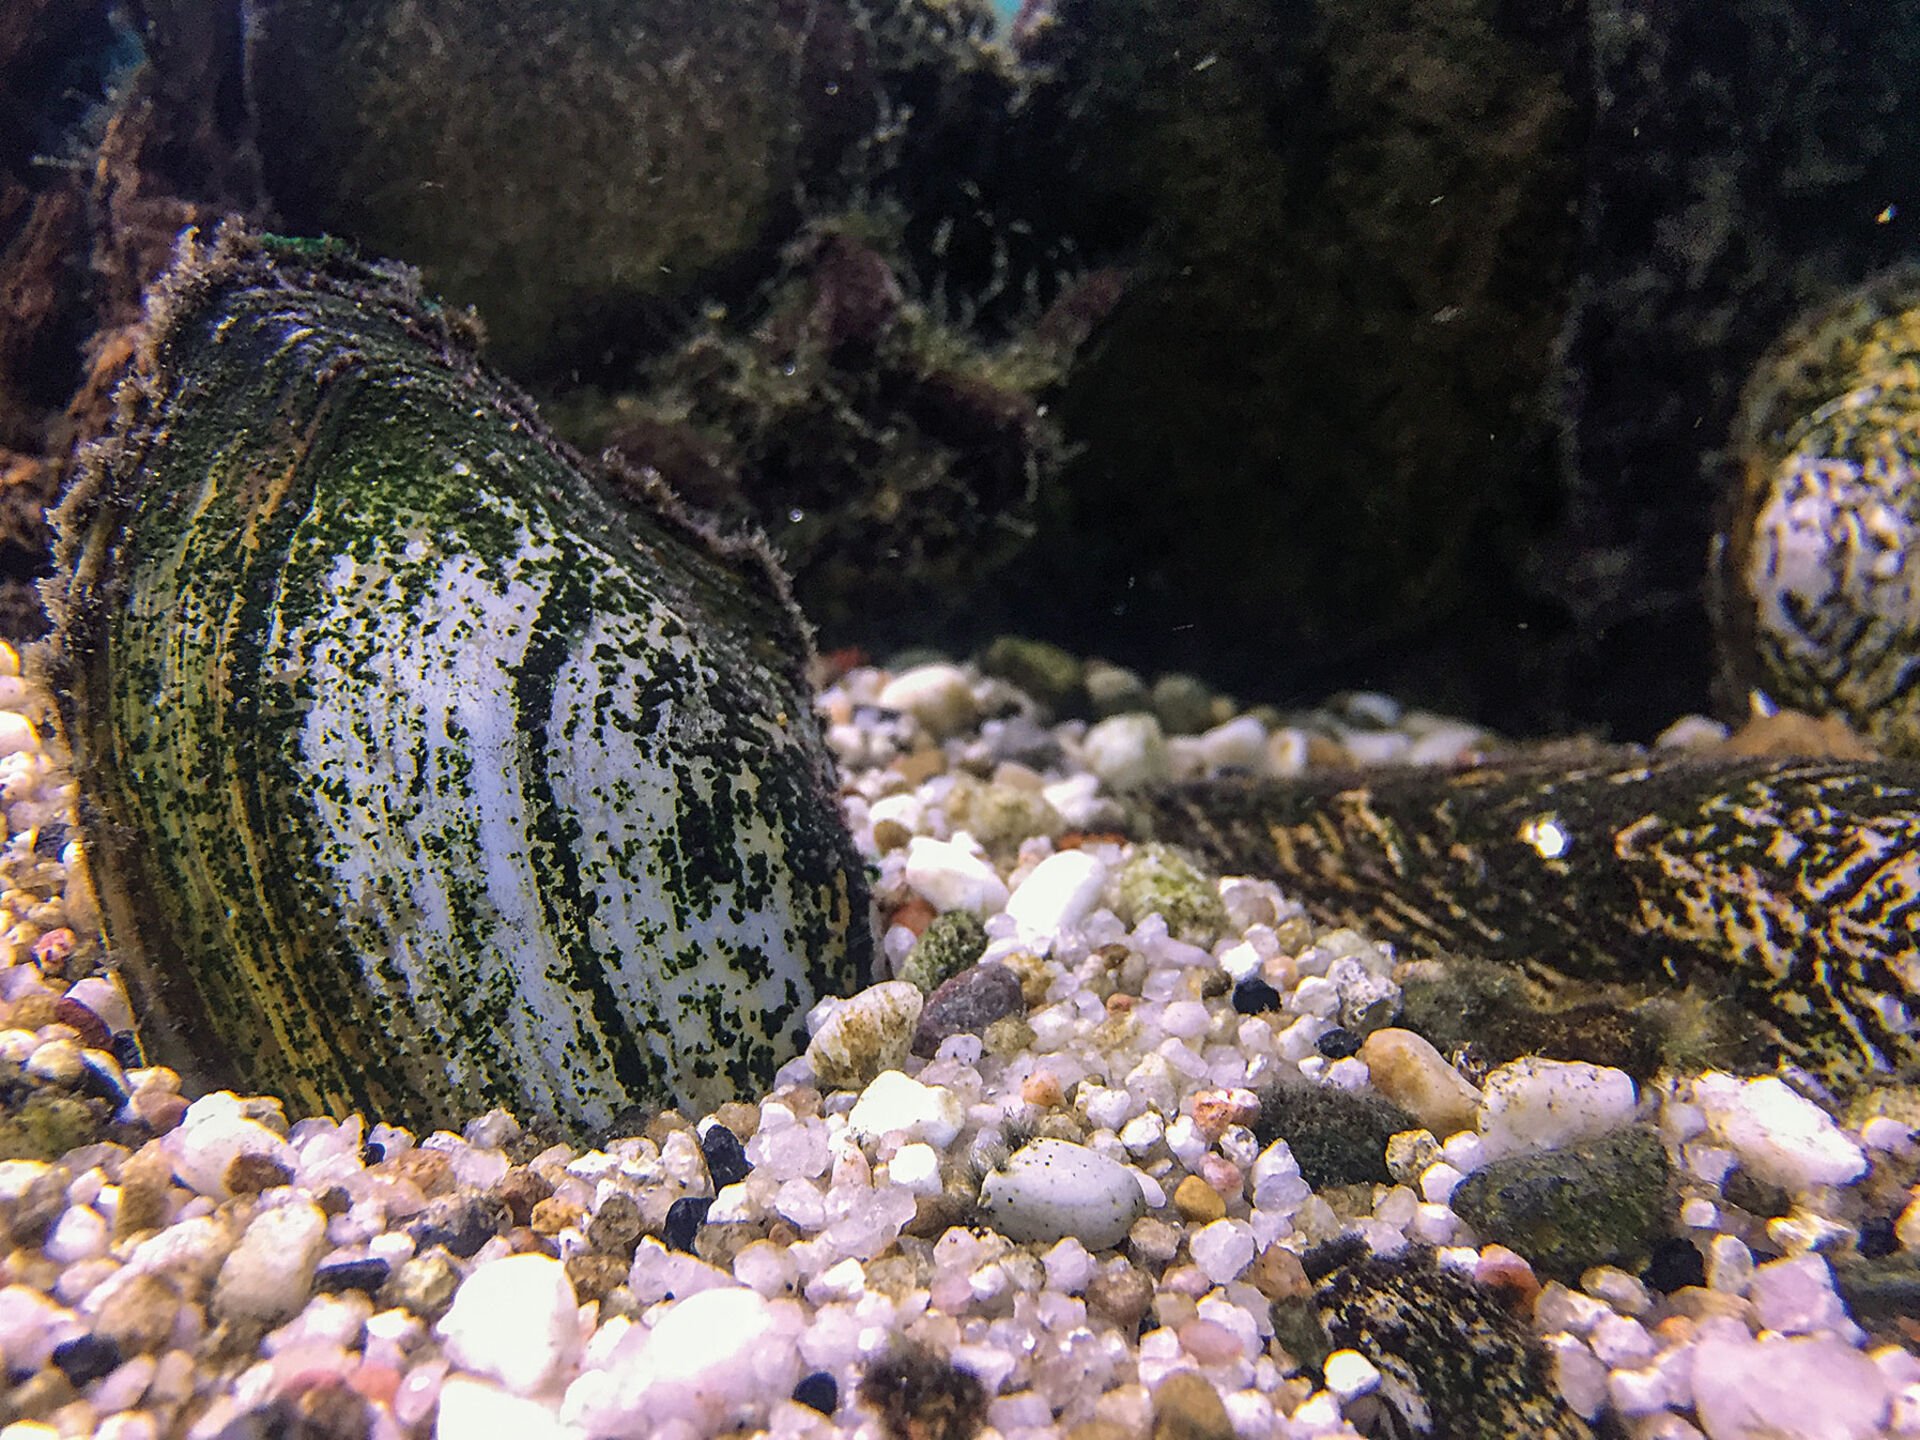  Muschelschalen eigenen sich gut zur Dekoration jedes Kaltwasseraquariums – ob wohl oder übel gehören Muscheln mittlerweile zu fast jedem Süsswassergewässer.  